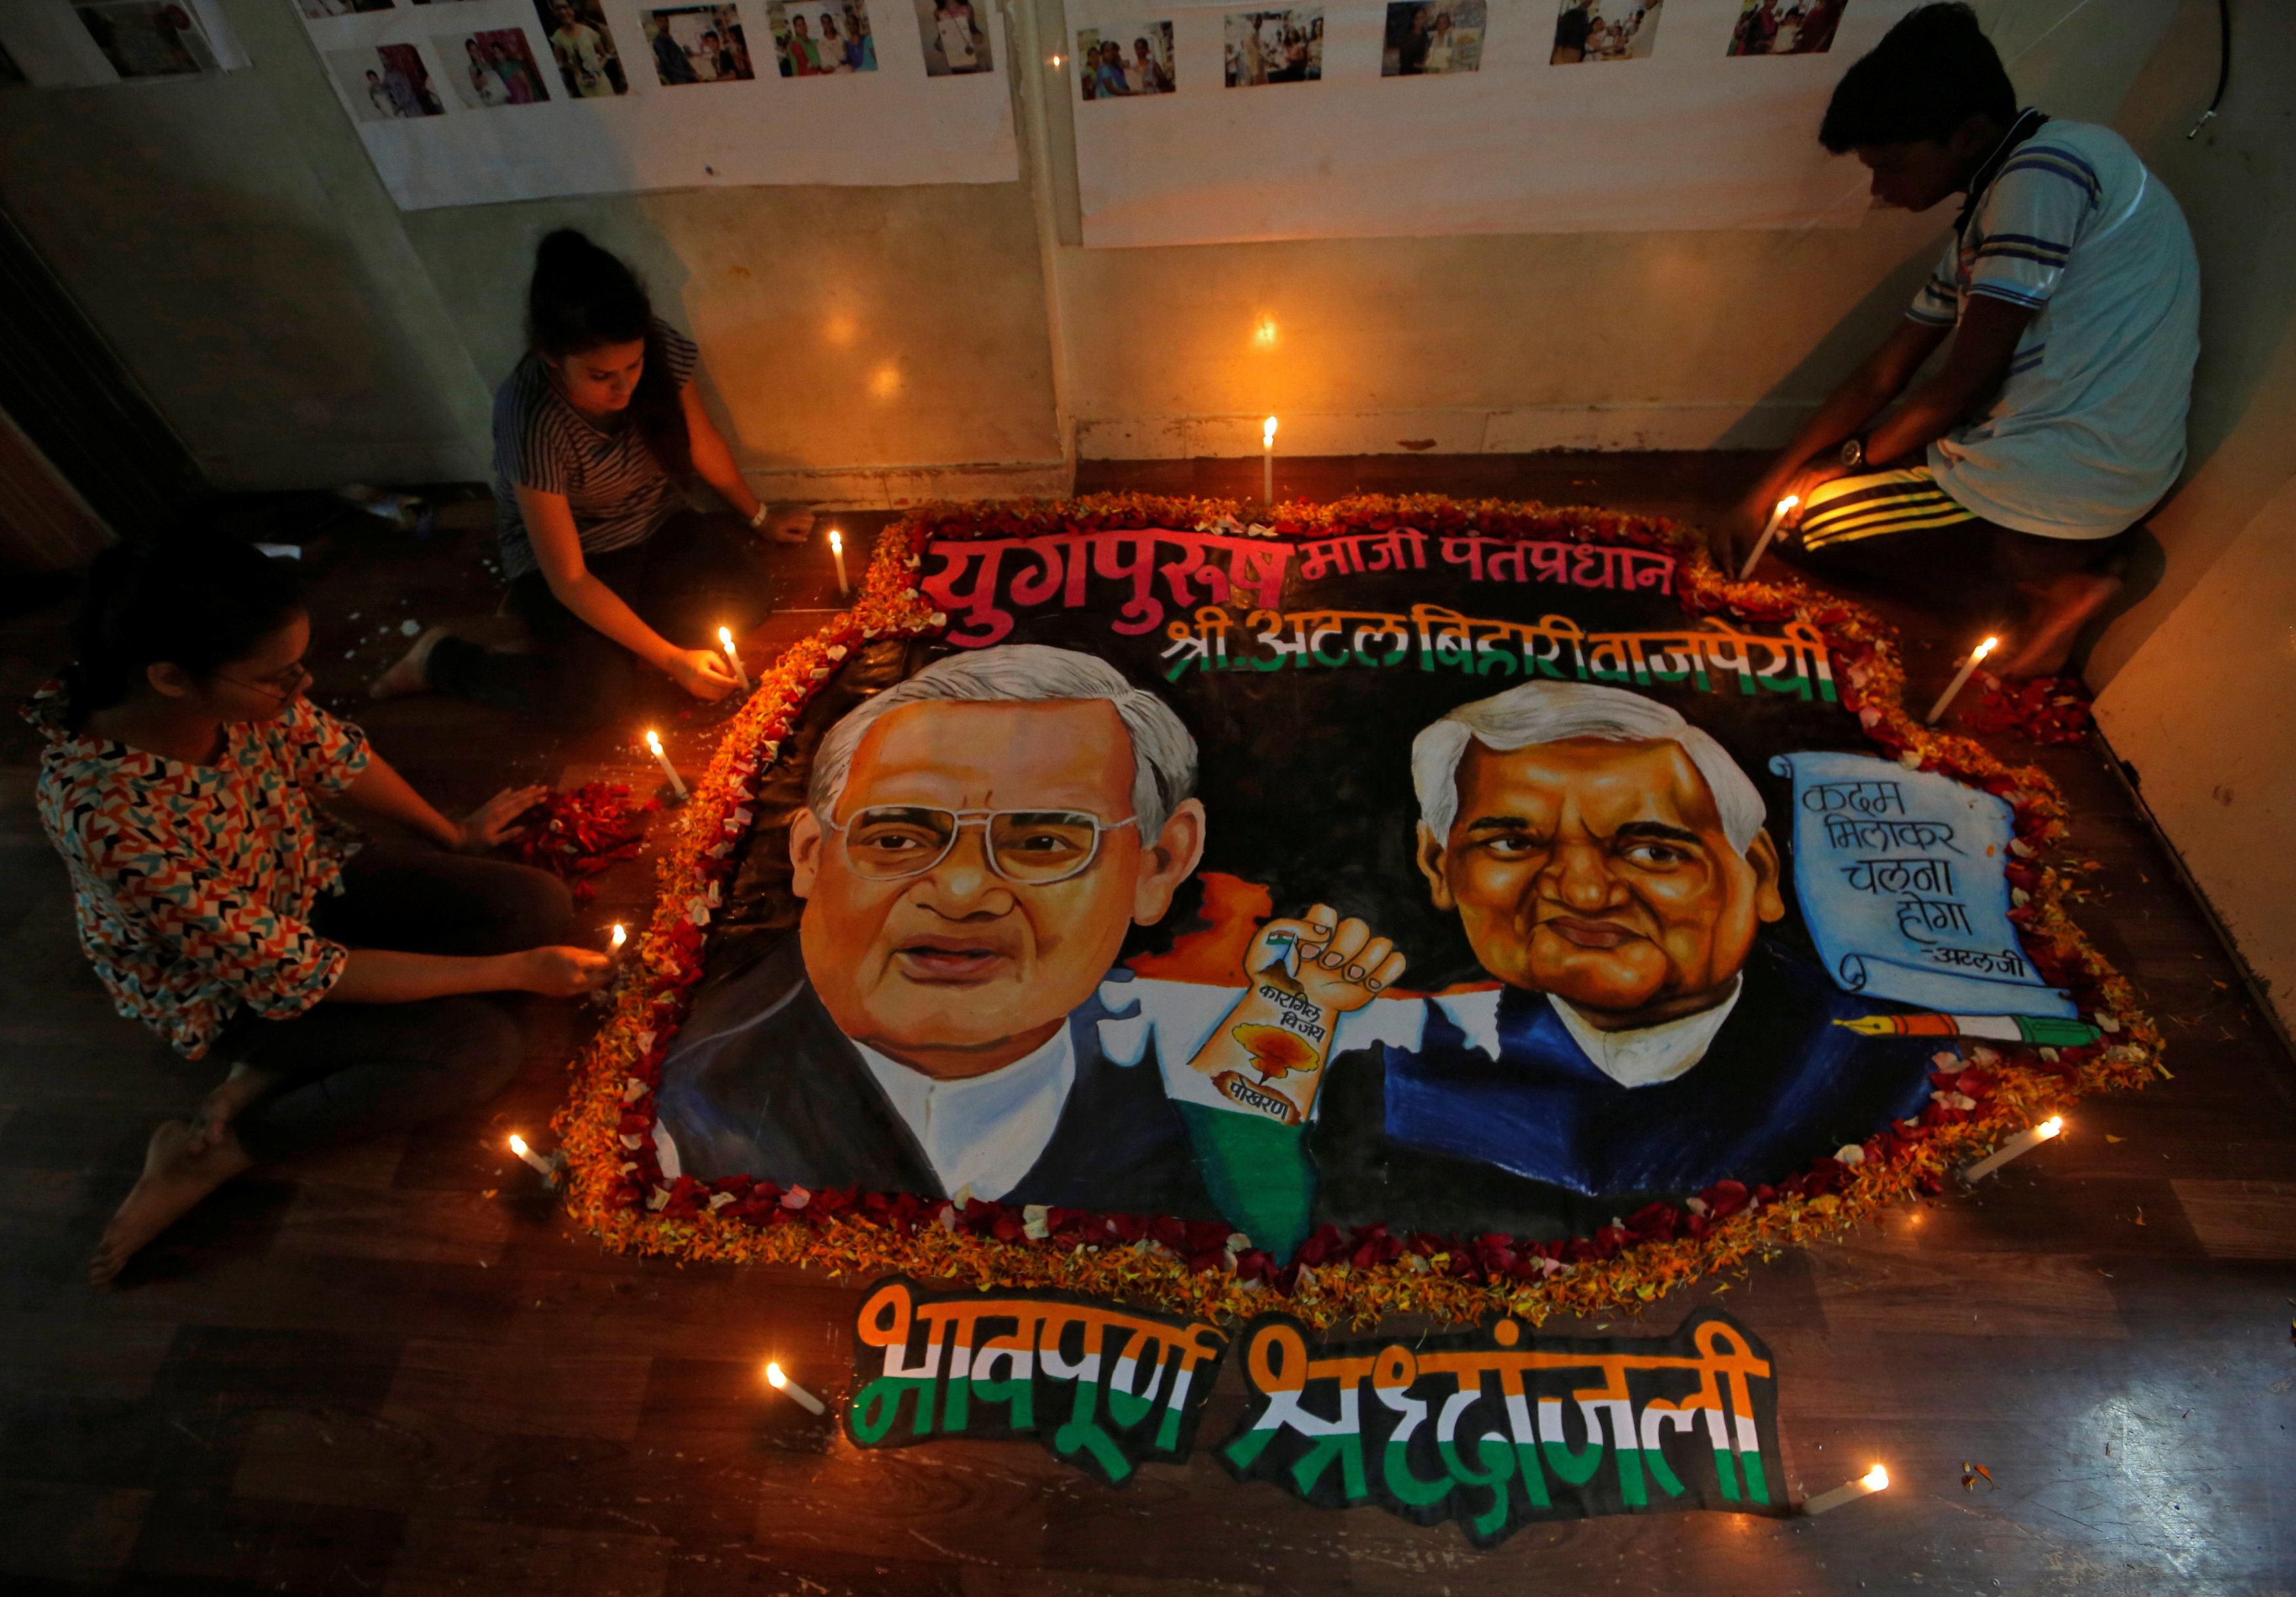 يضع الطلاب الشموع حول لوحة تضم رئيس الوزراء الهندي السابق  لتكريمه